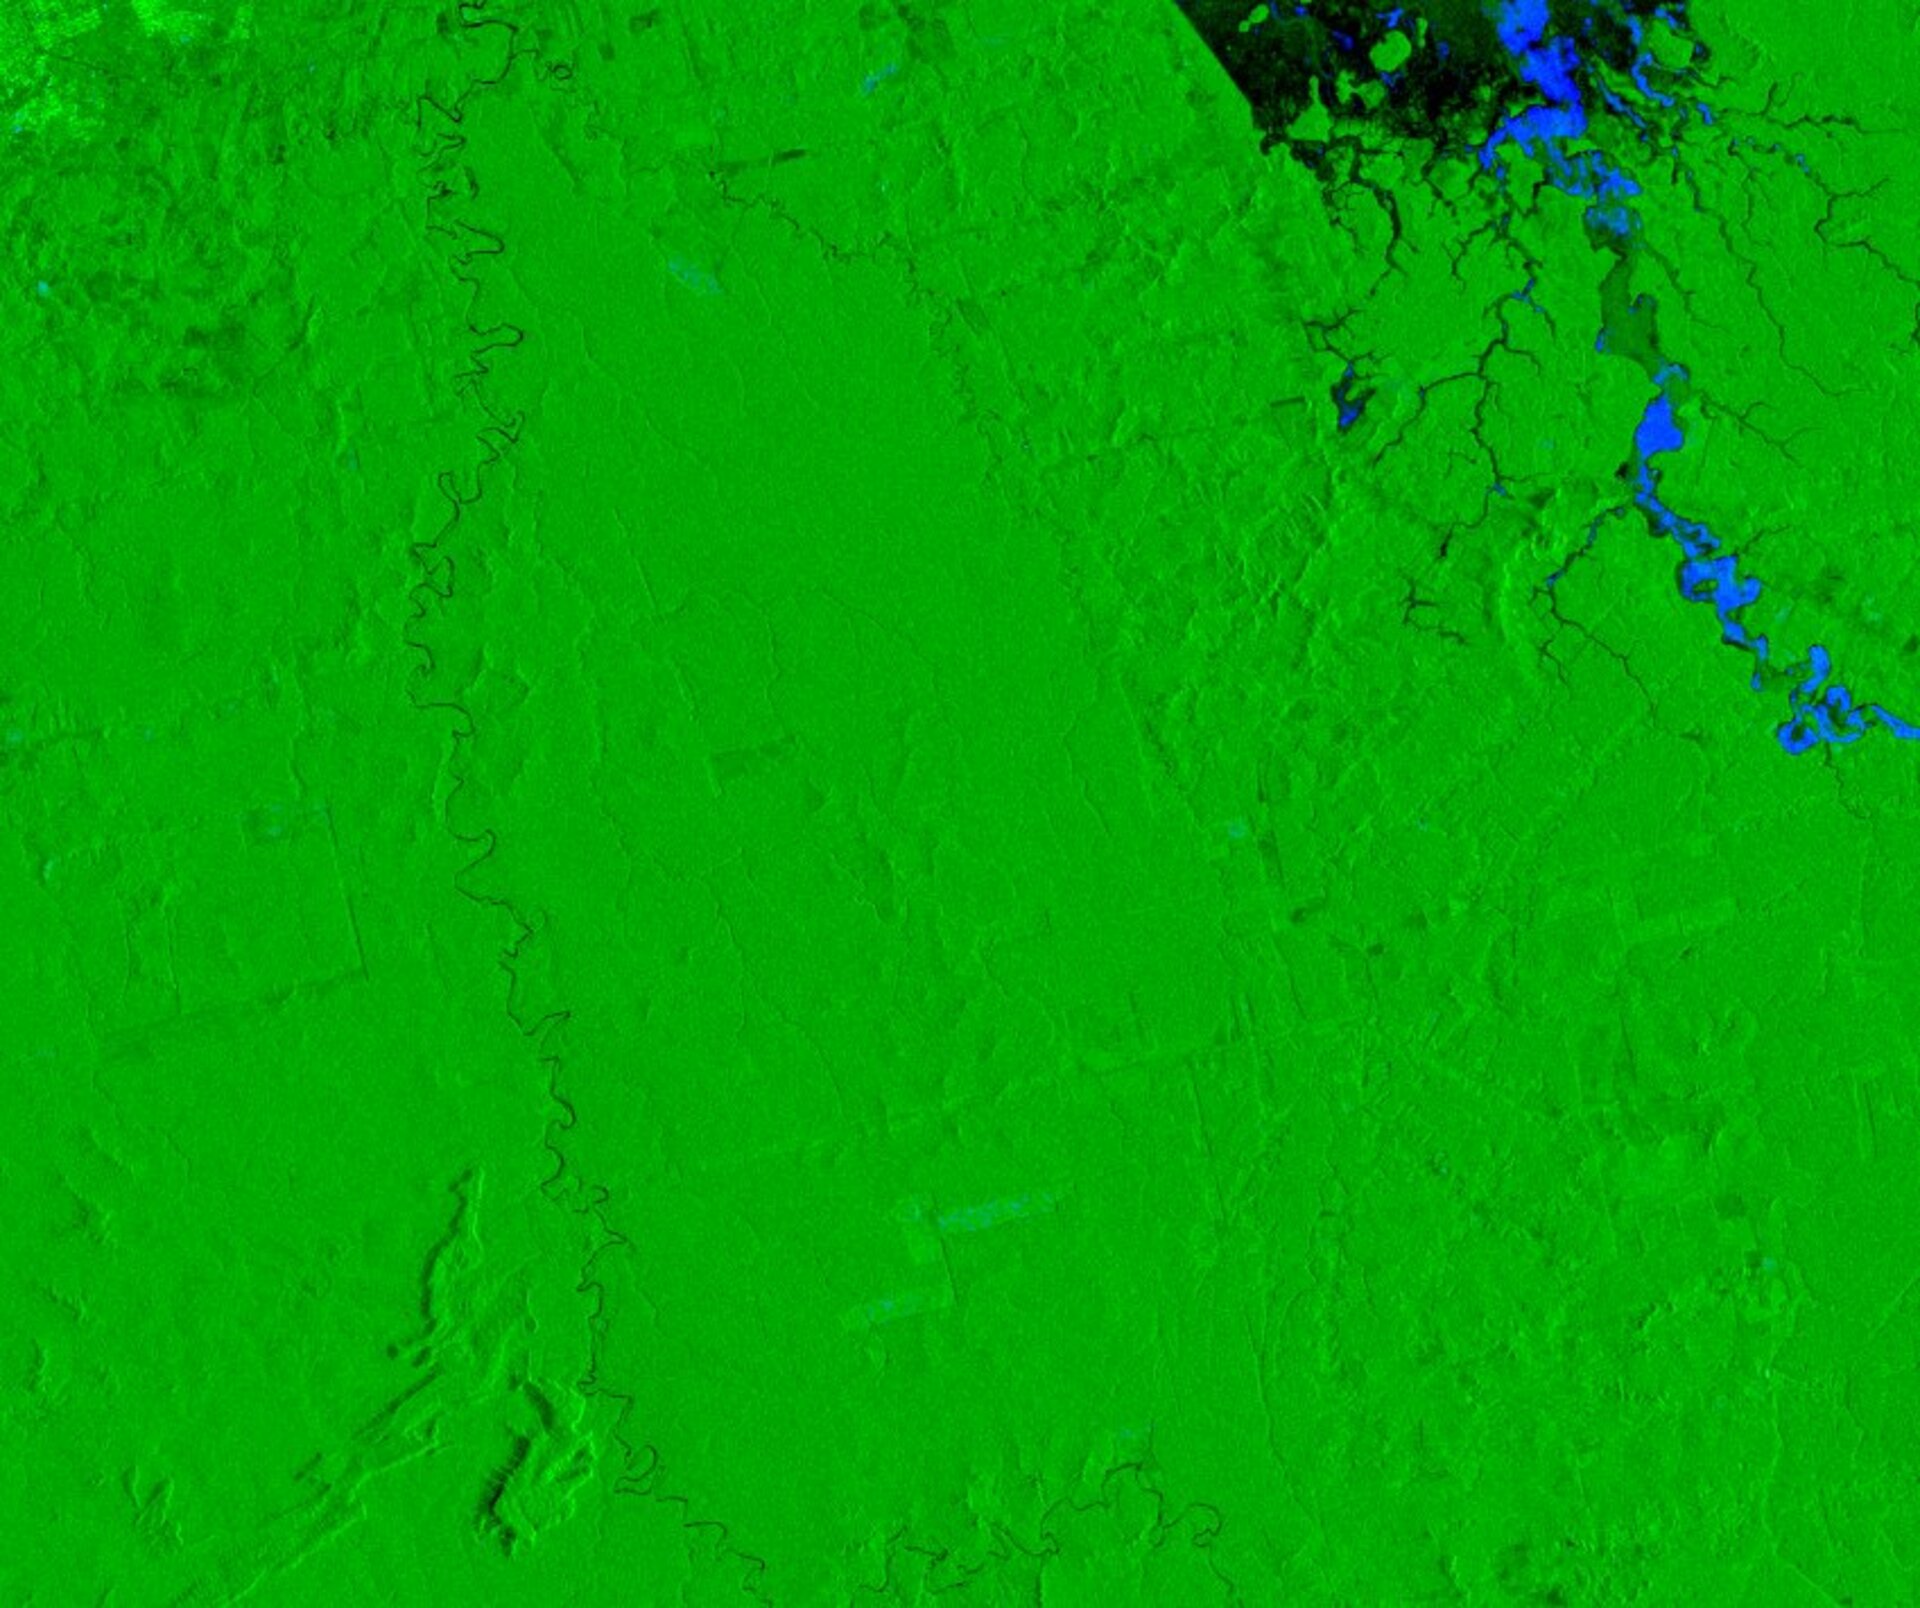 Satellite image showing deforestation in North West Brasil